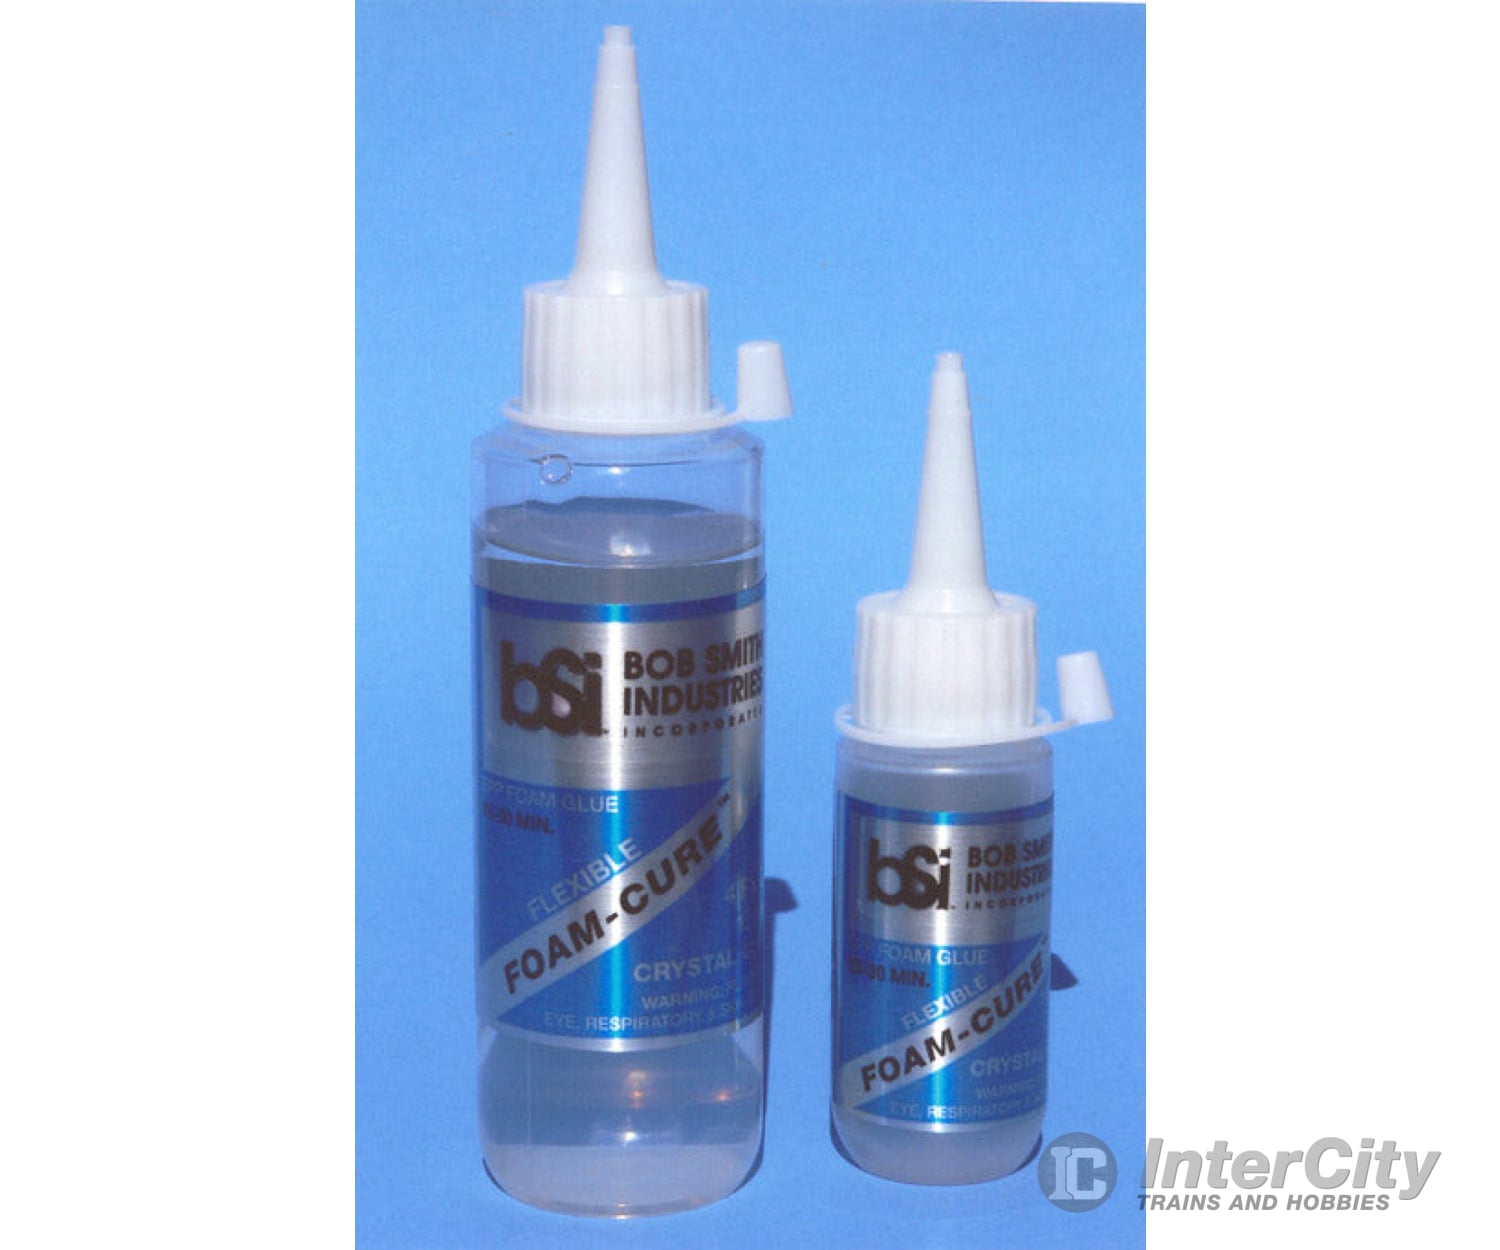 Bob Smith Glue 142 Foam-Cure Epp Foam (4 Oz.) Glues & Adhesives